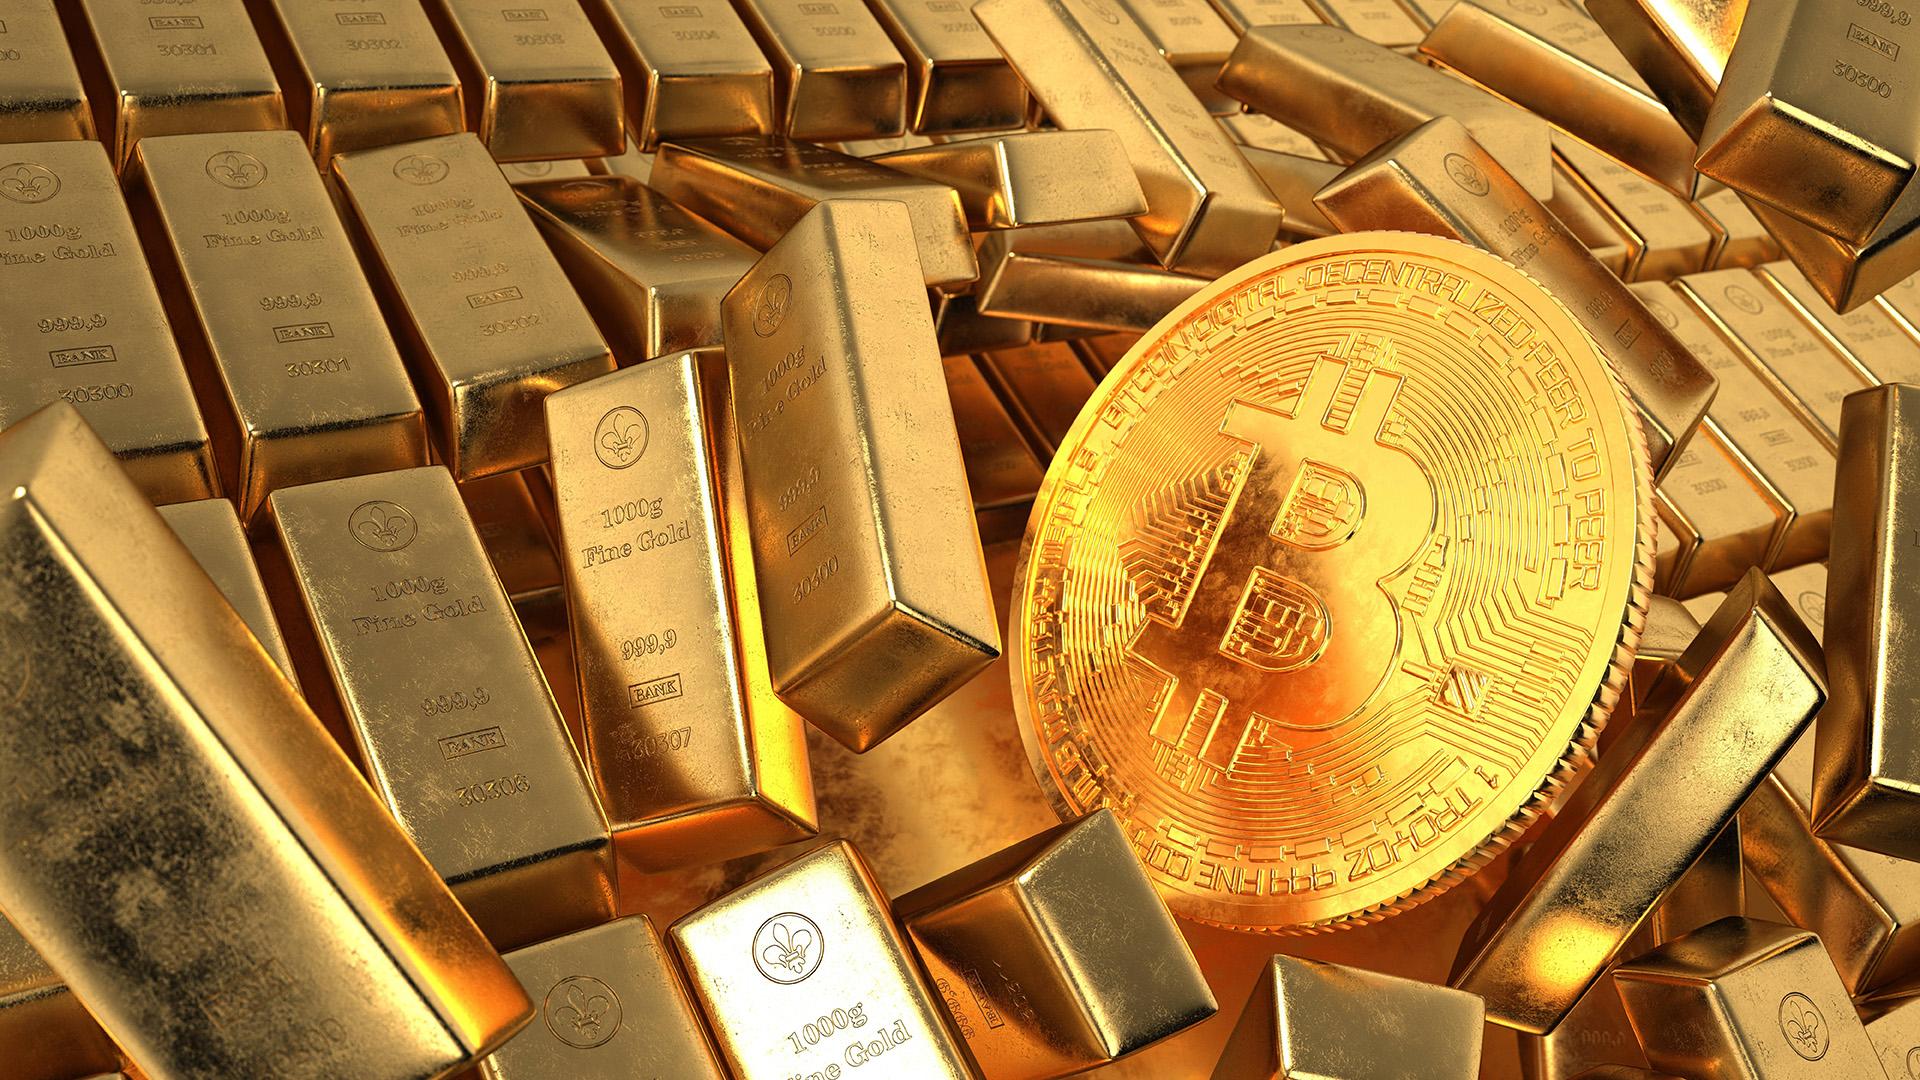 El director ejecutivo de Evolution Mining cree que el oro podría reemplazar a Bitcoin (BTC)